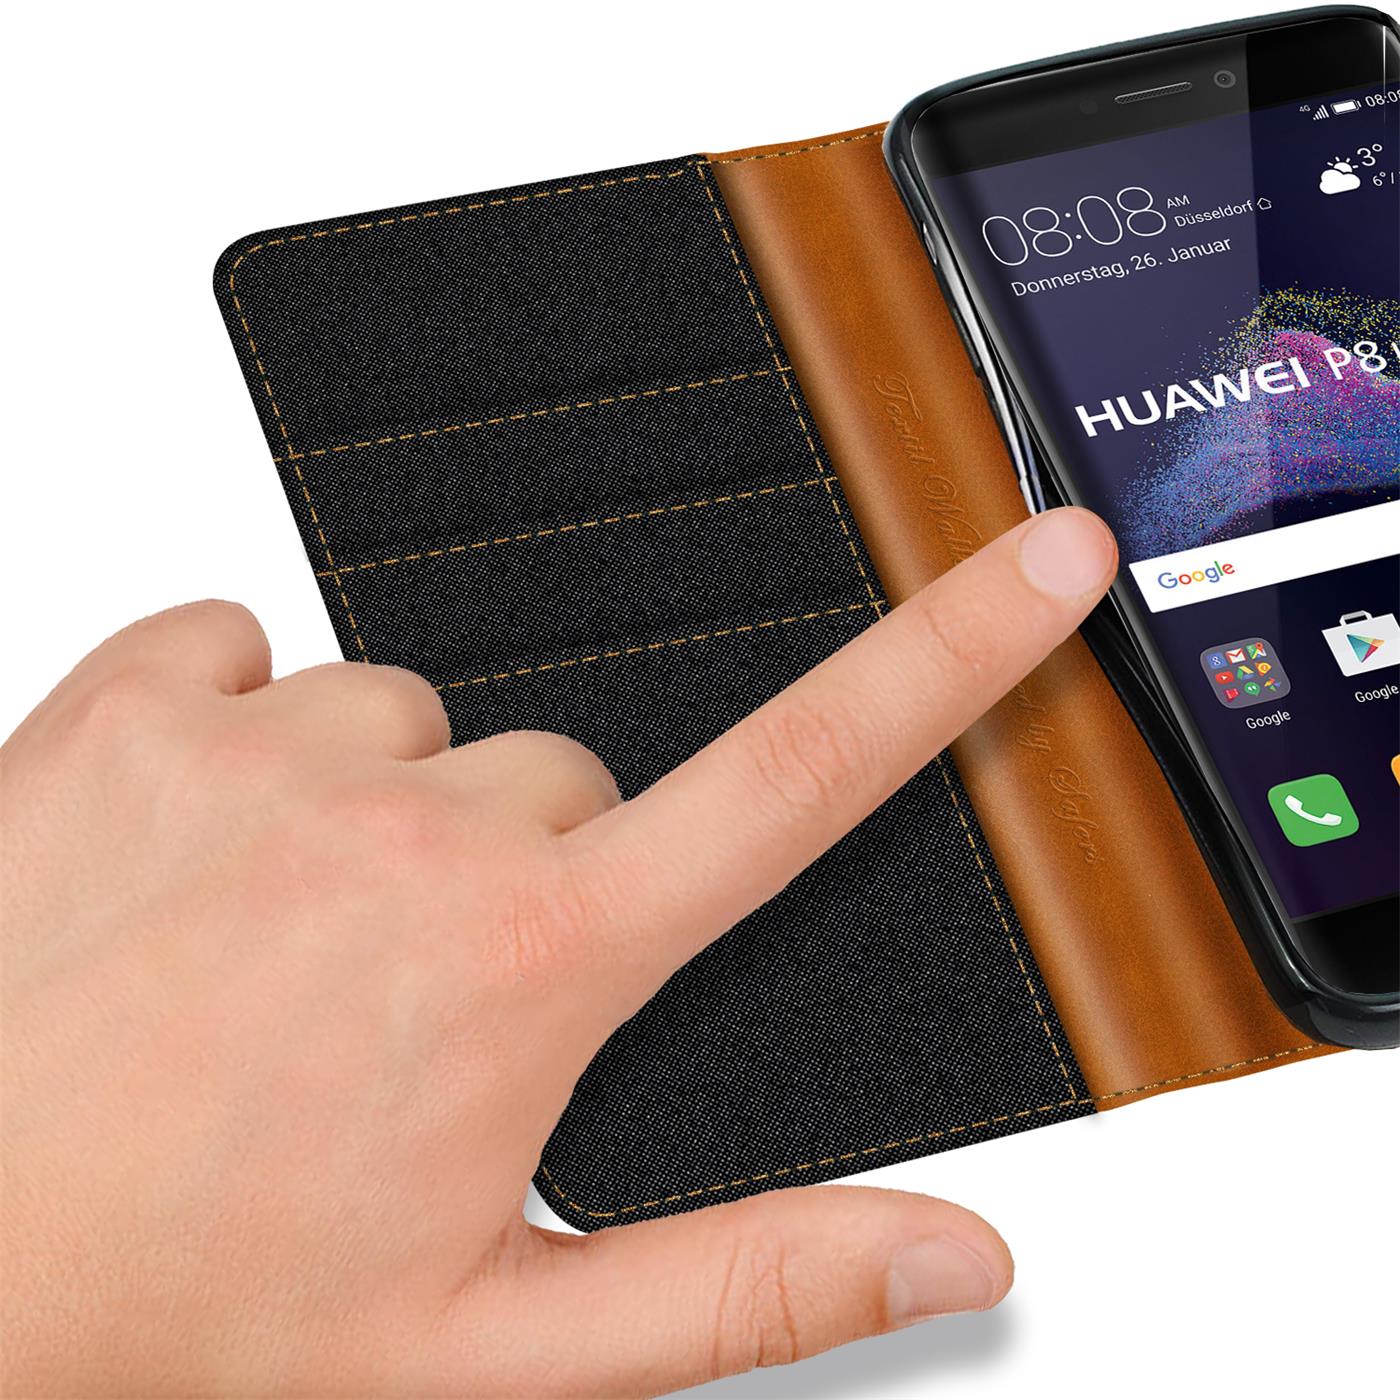 Handy Hülle für Huawei P8 Lite 2017 Tasche Wallet Flip Case Schutz Hülle Cover